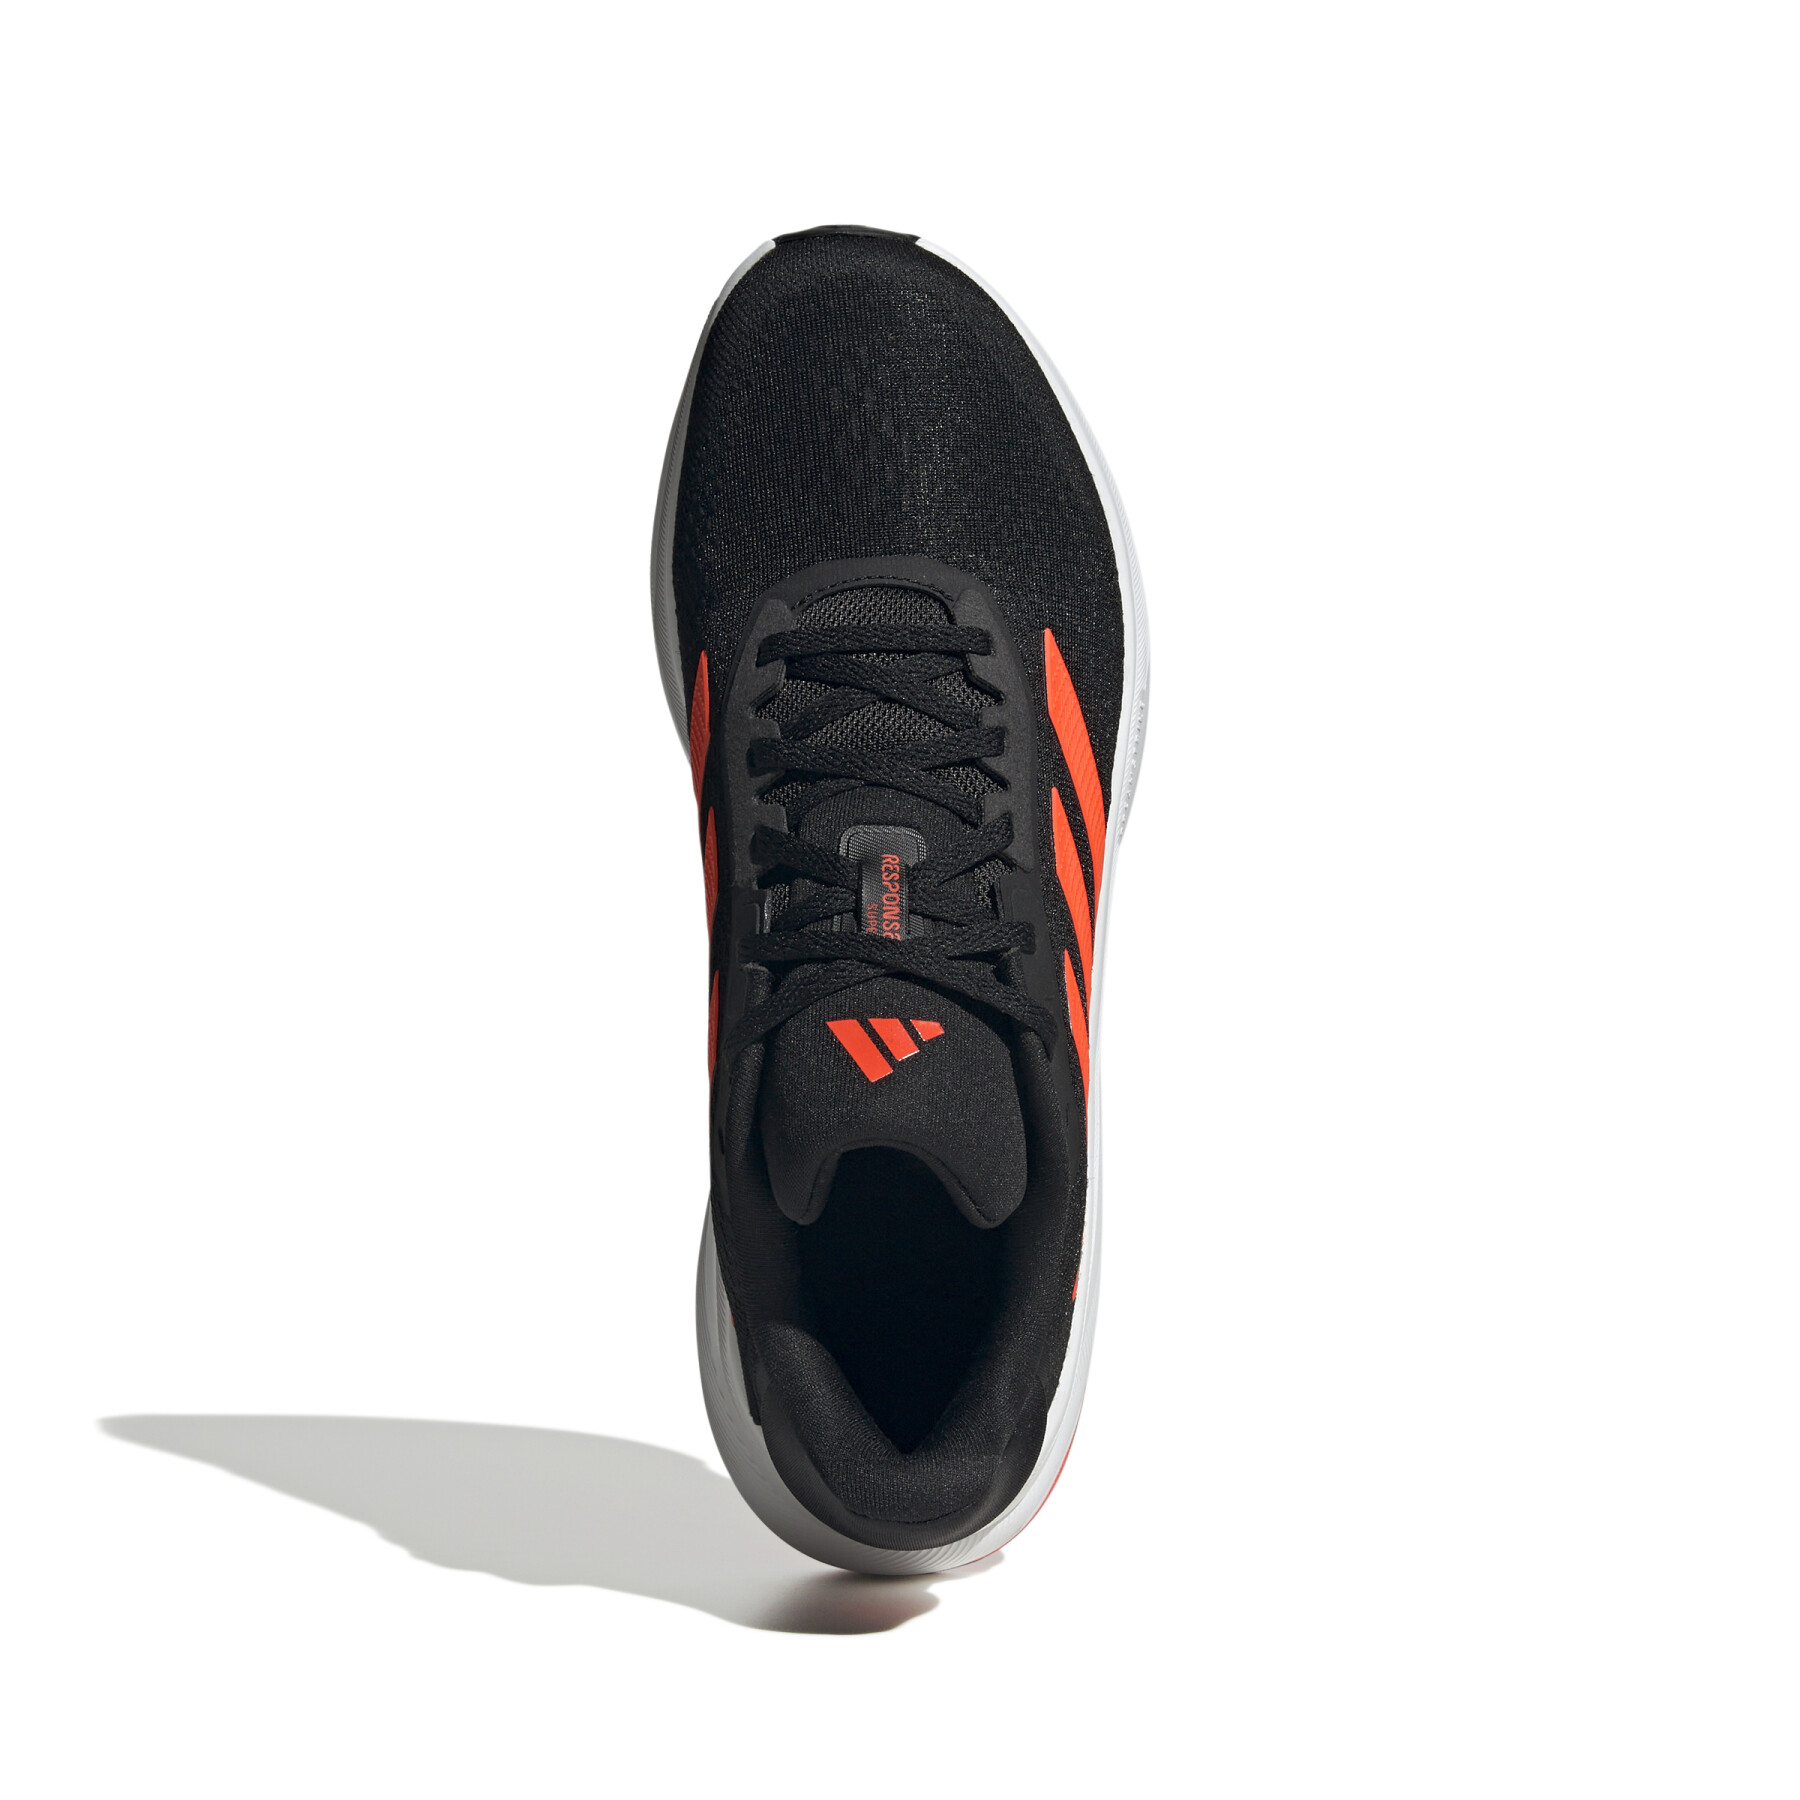 Chaussures de running adidas Response Super